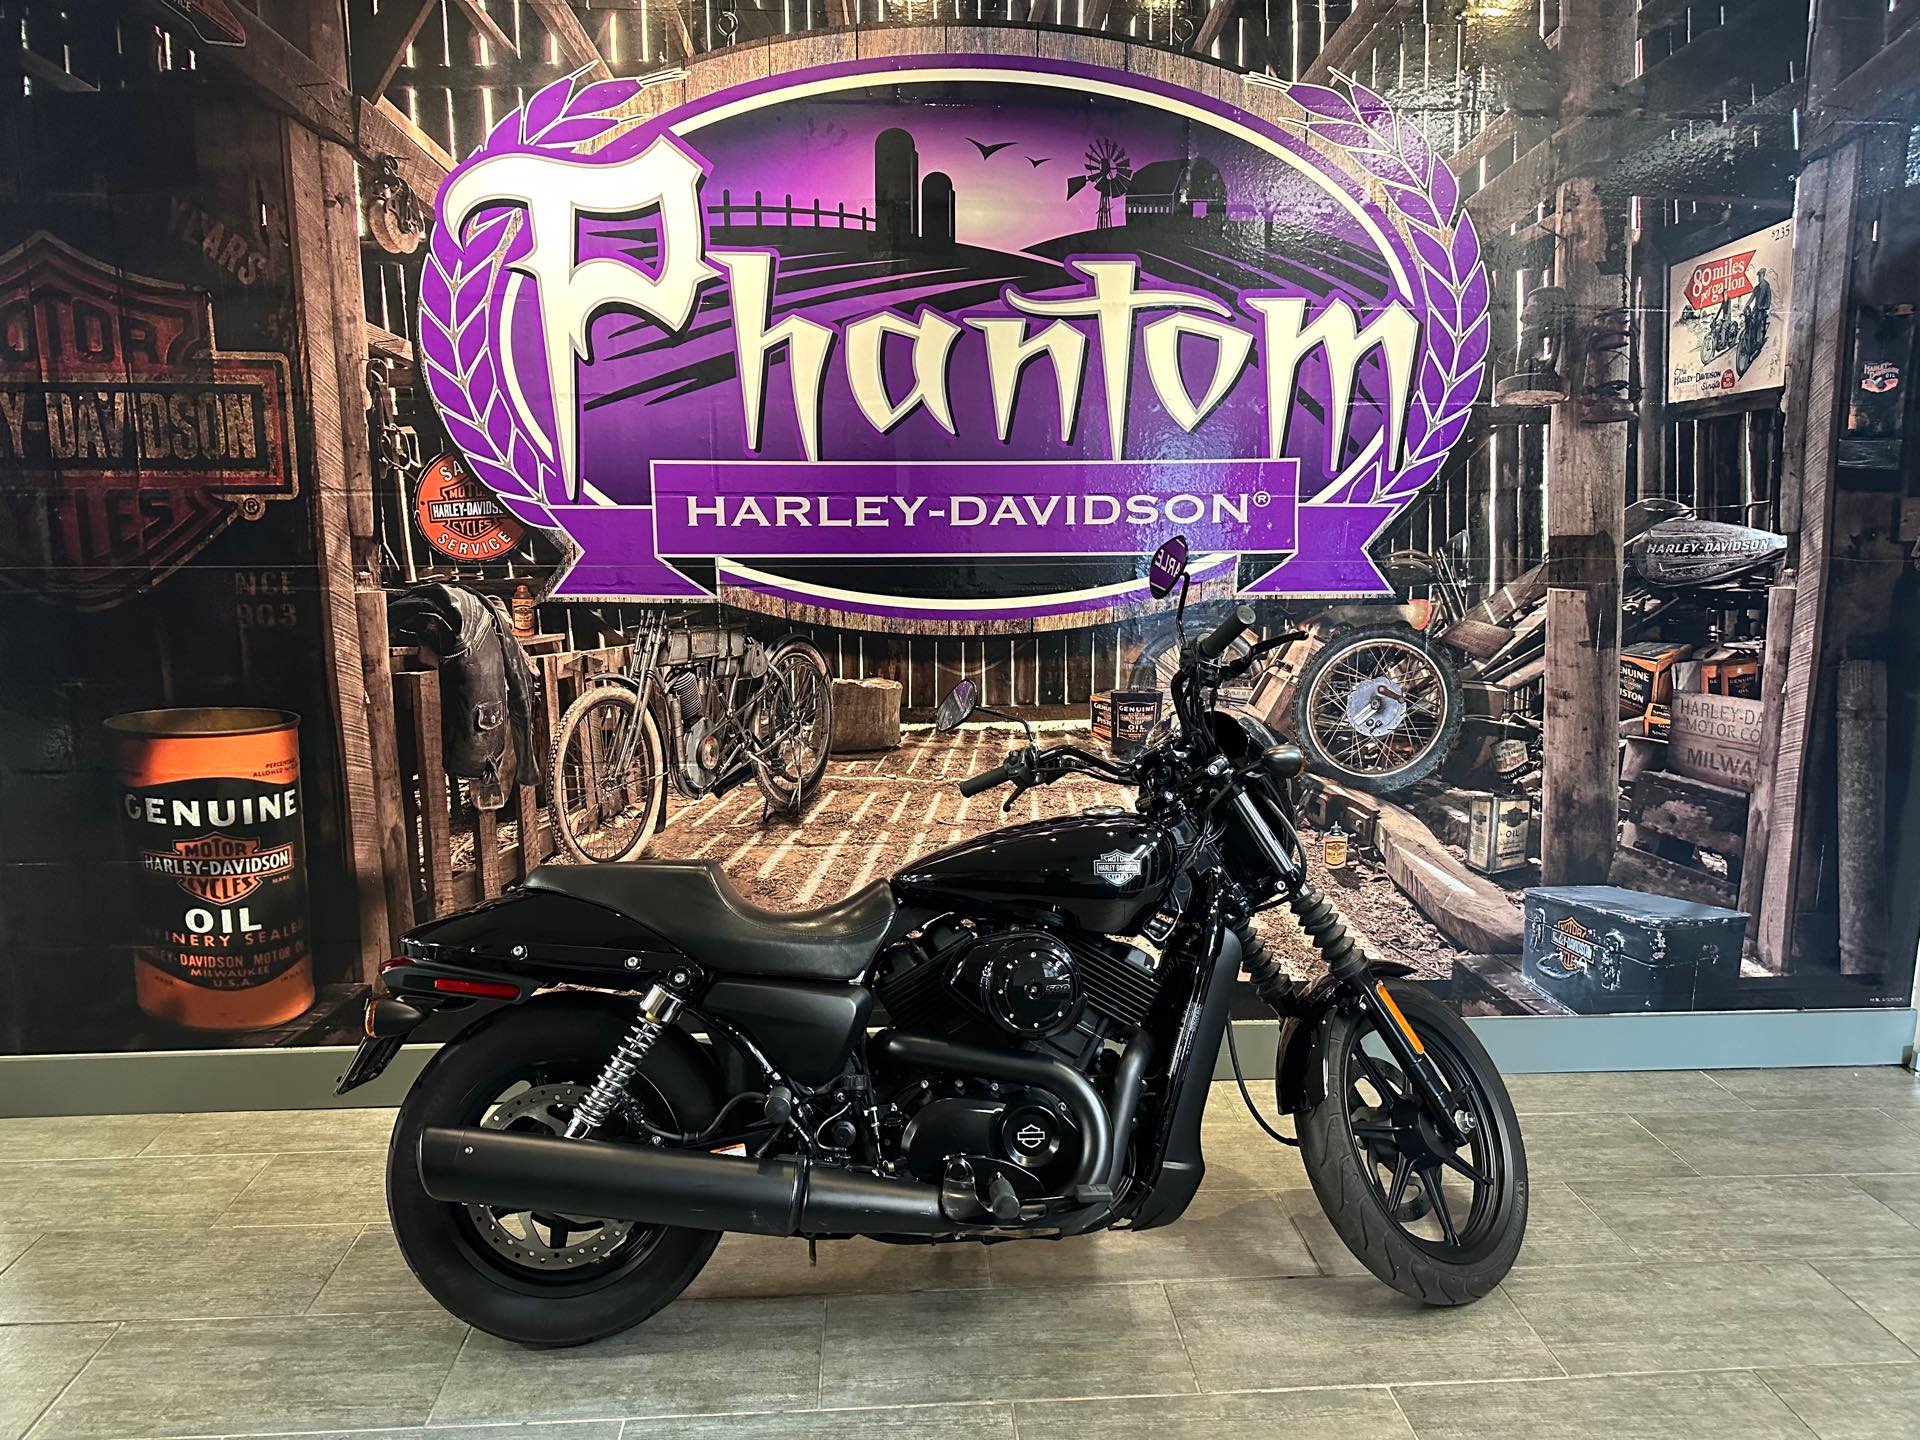 2019 Harley-Davidson Street 500 at Phantom Harley-Davidson